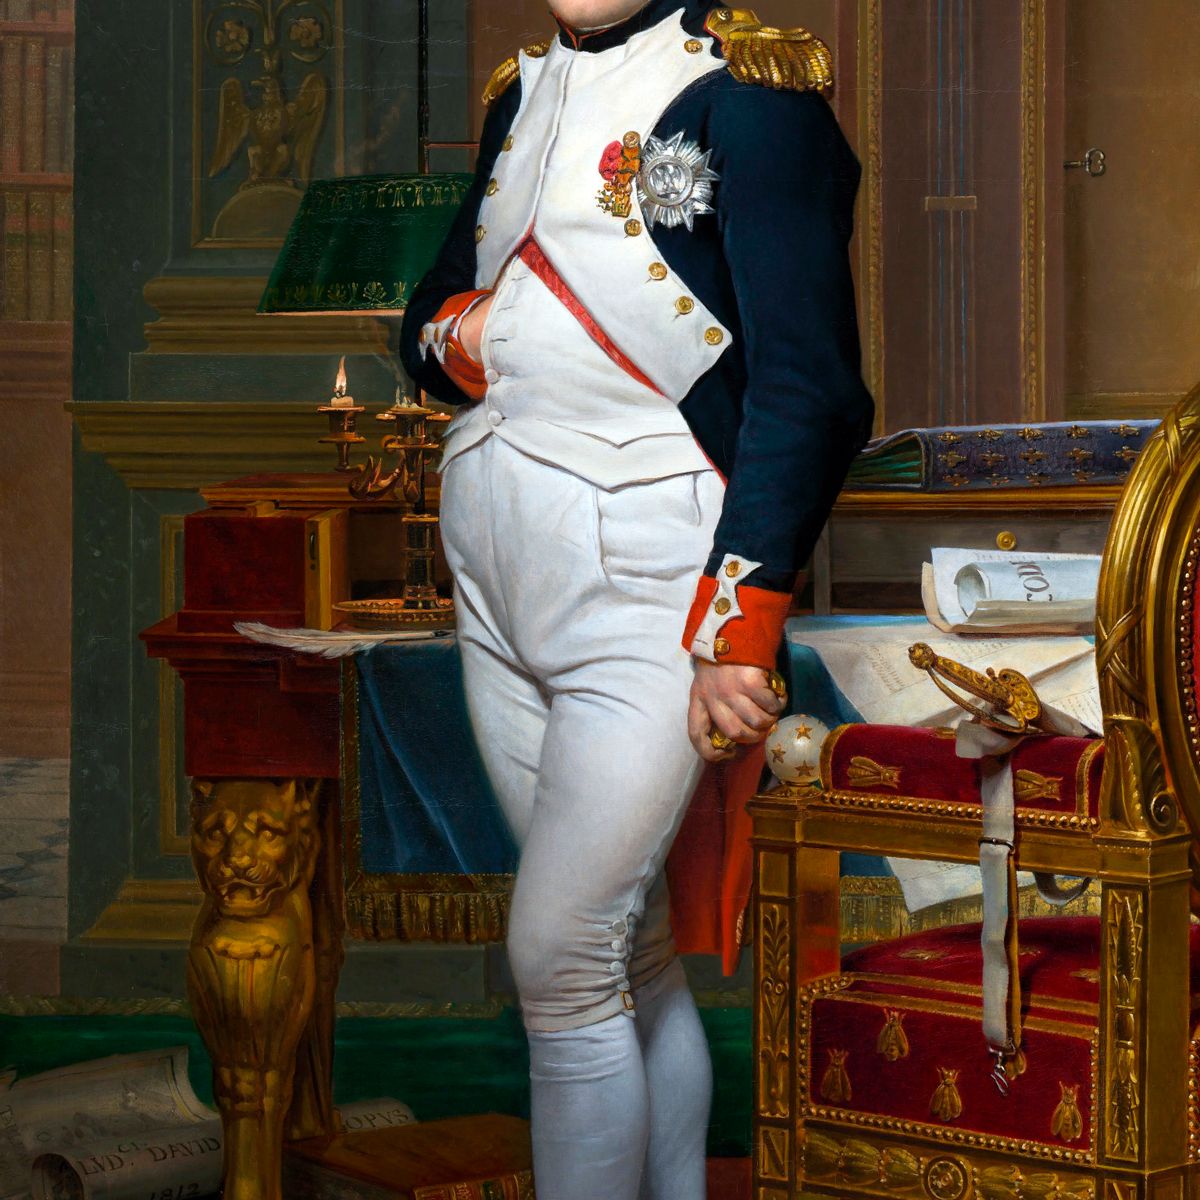 Napoleon deformed hand